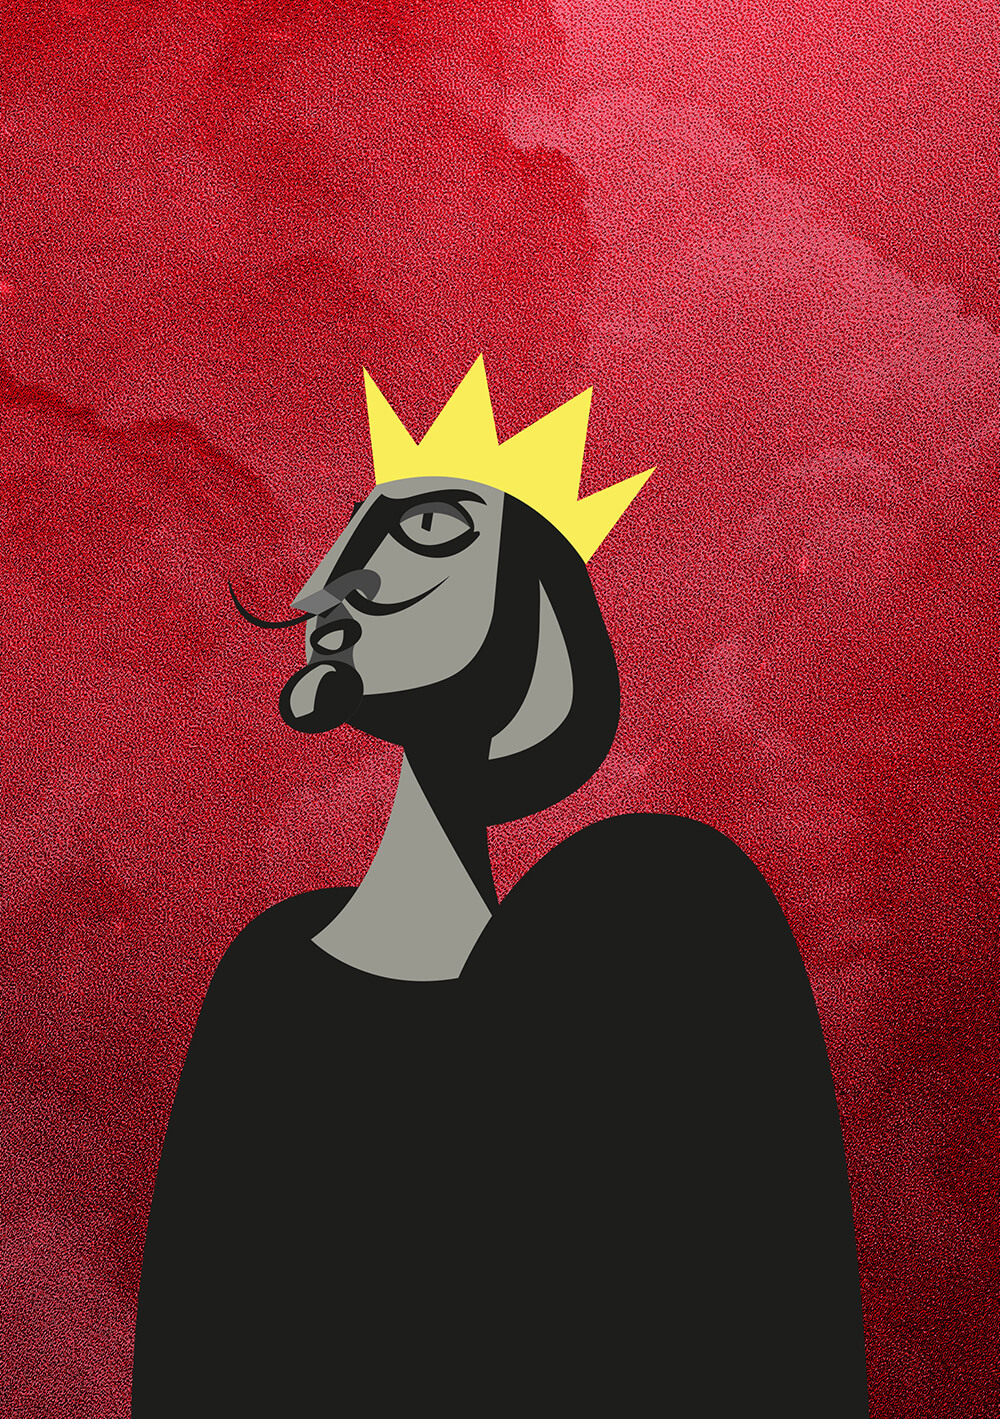 le roi et l'oiseau, revue popcorn, illustration, cinéma, le roi